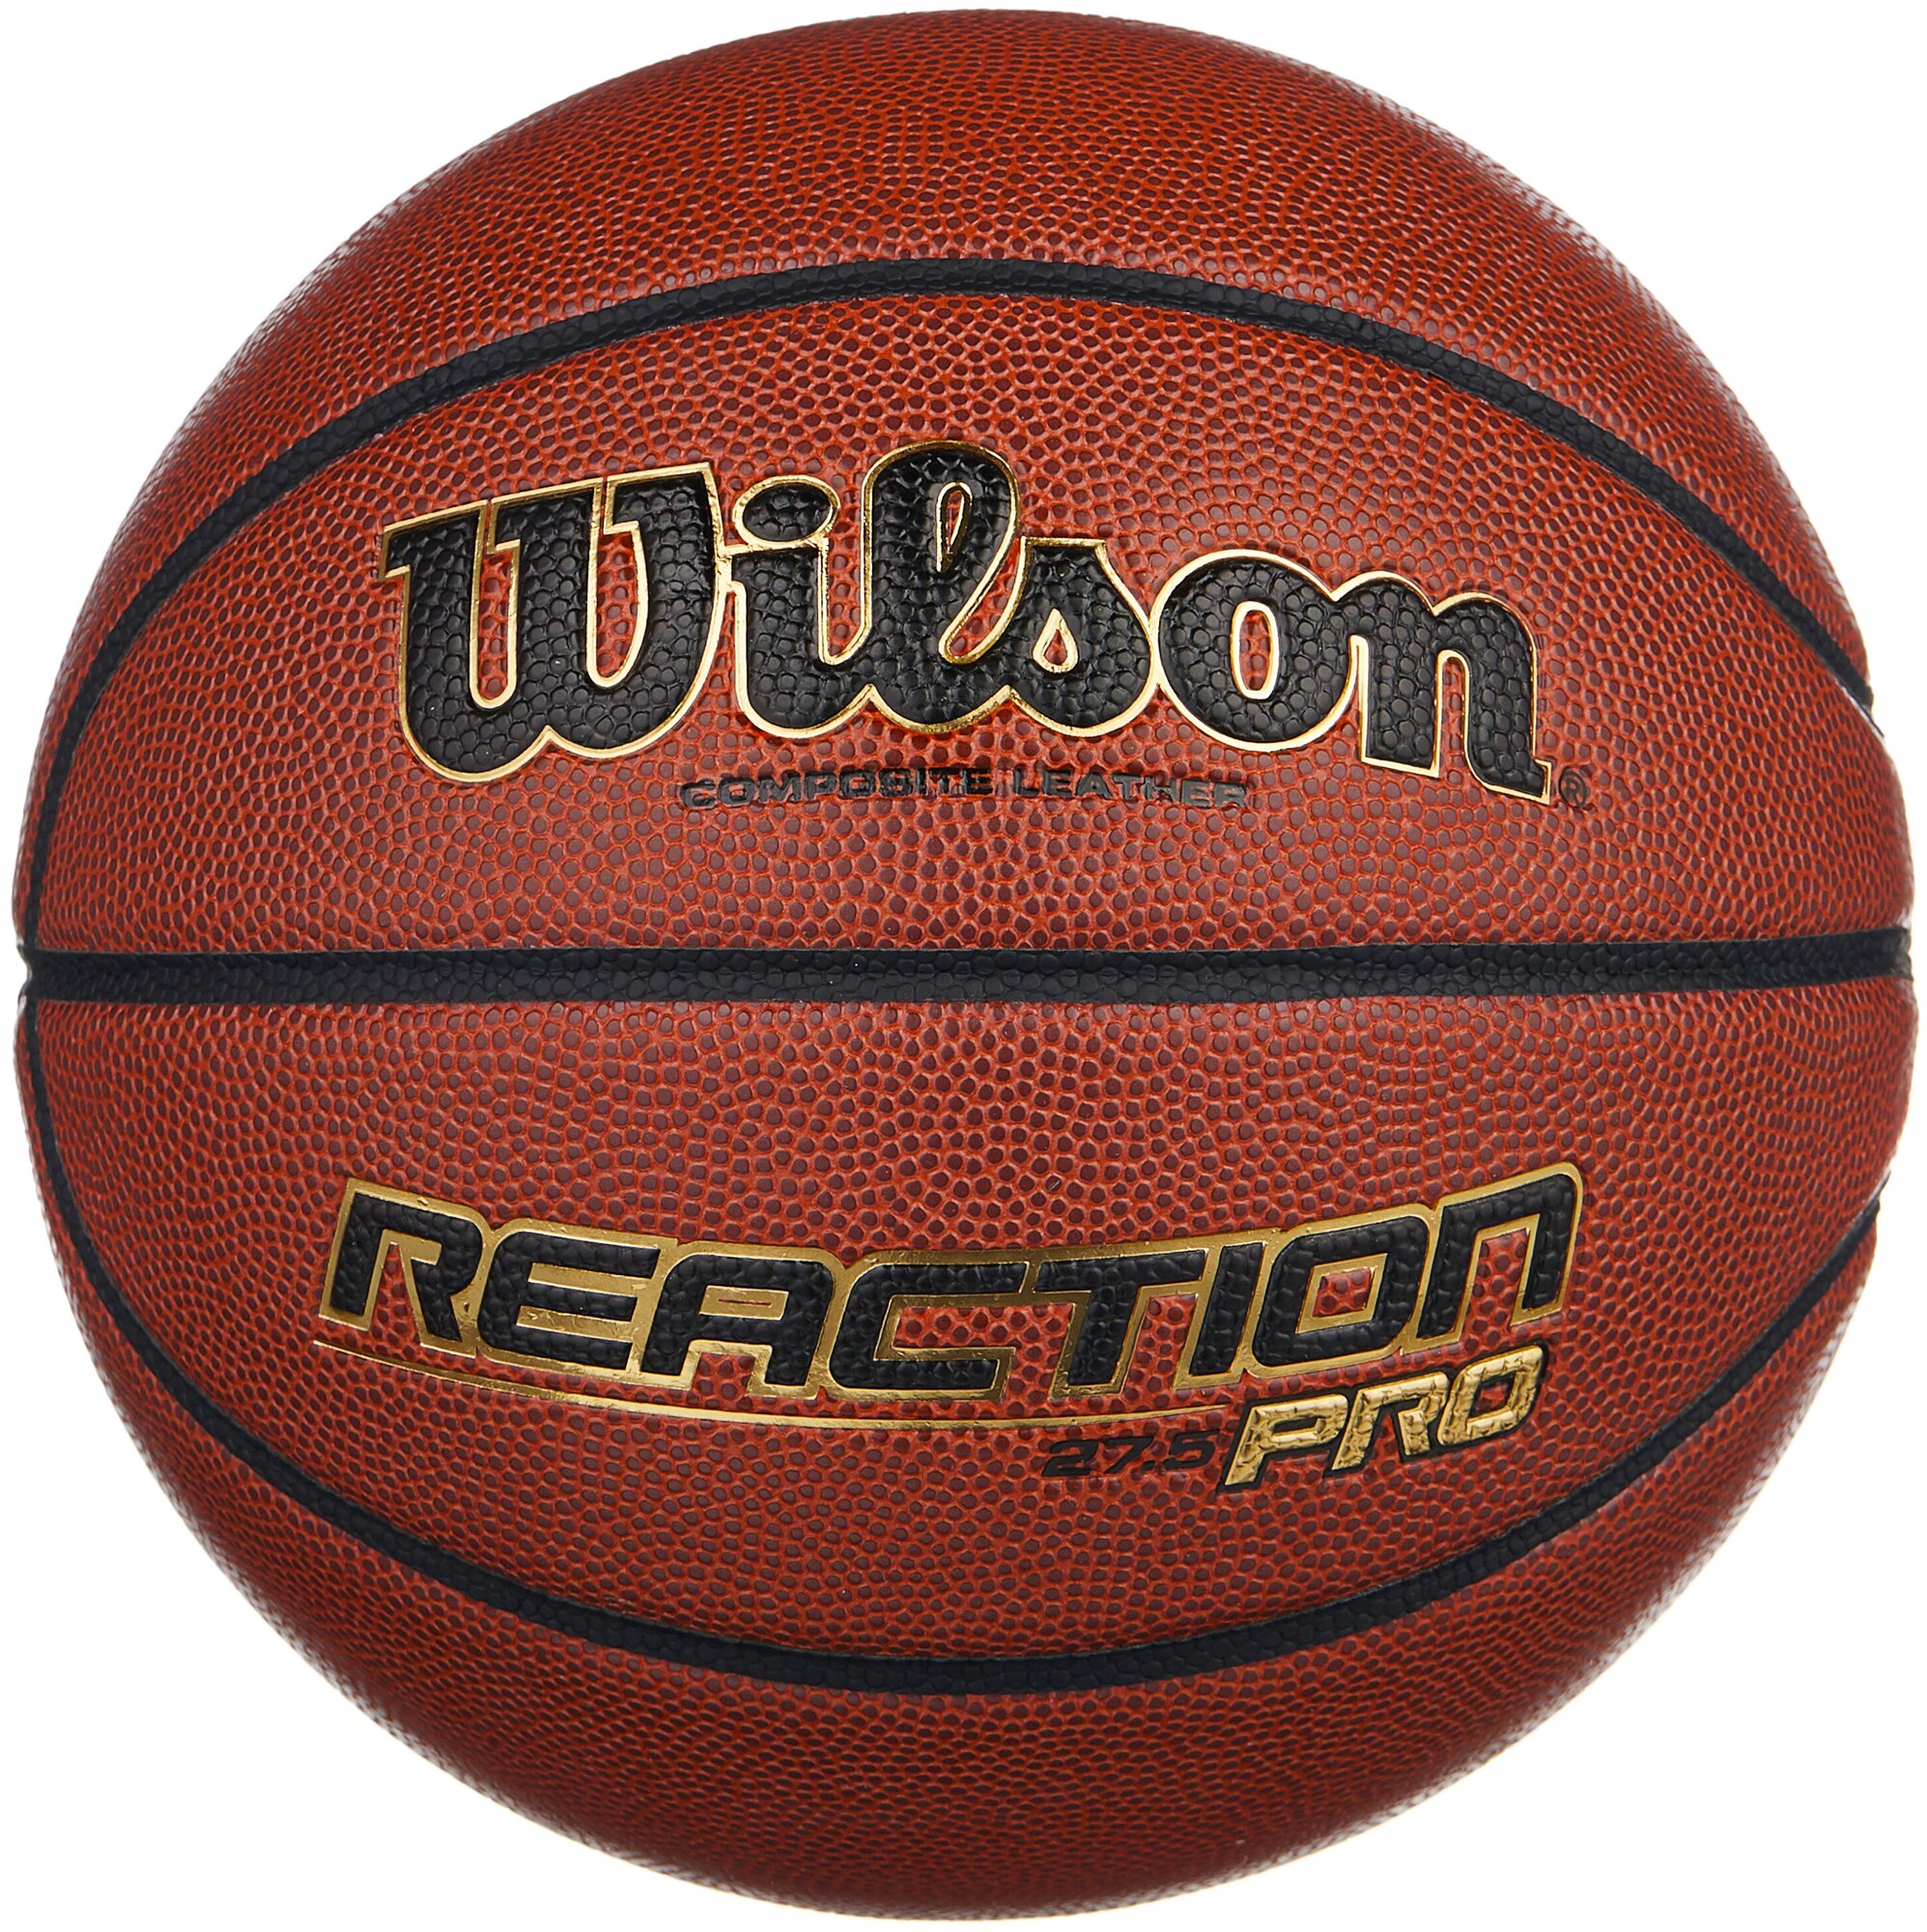 Мяч баскетбольный WILSON Reaction PRO, арт.WTB10139XB05, р.5, темно-коричневый